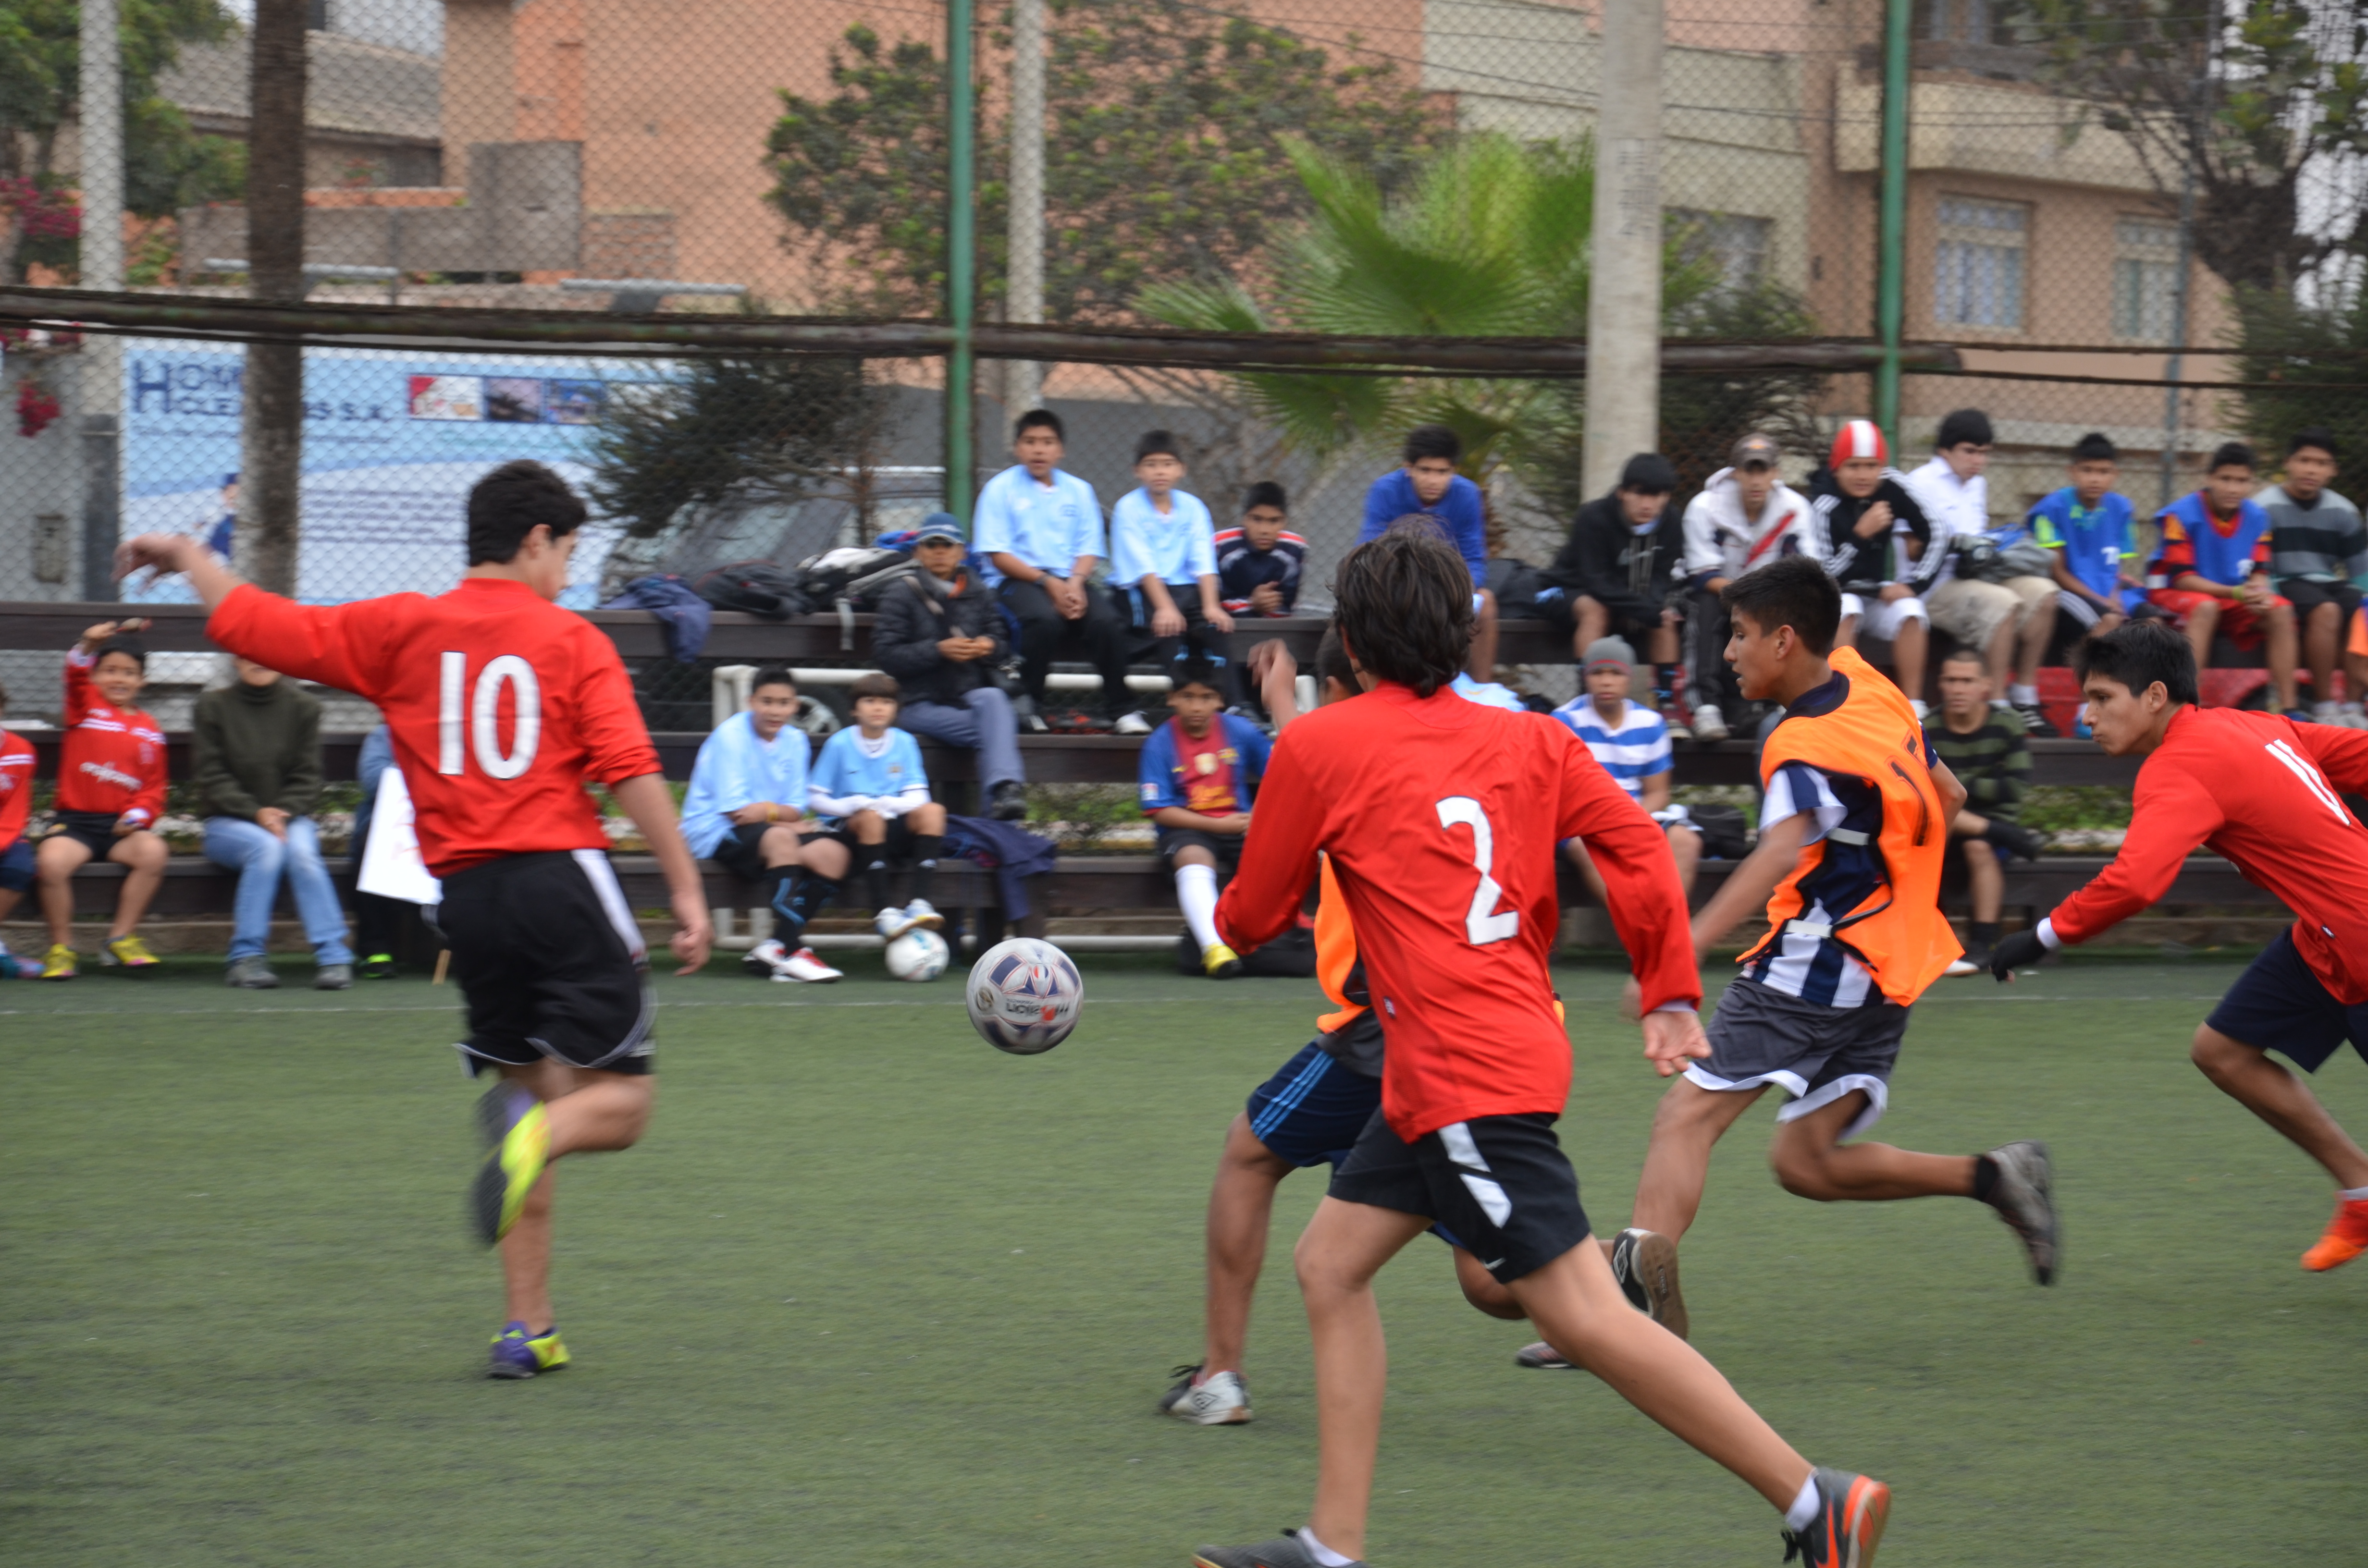 Joves jugant a futbol_Municipalidad de Miraflores_Flickr